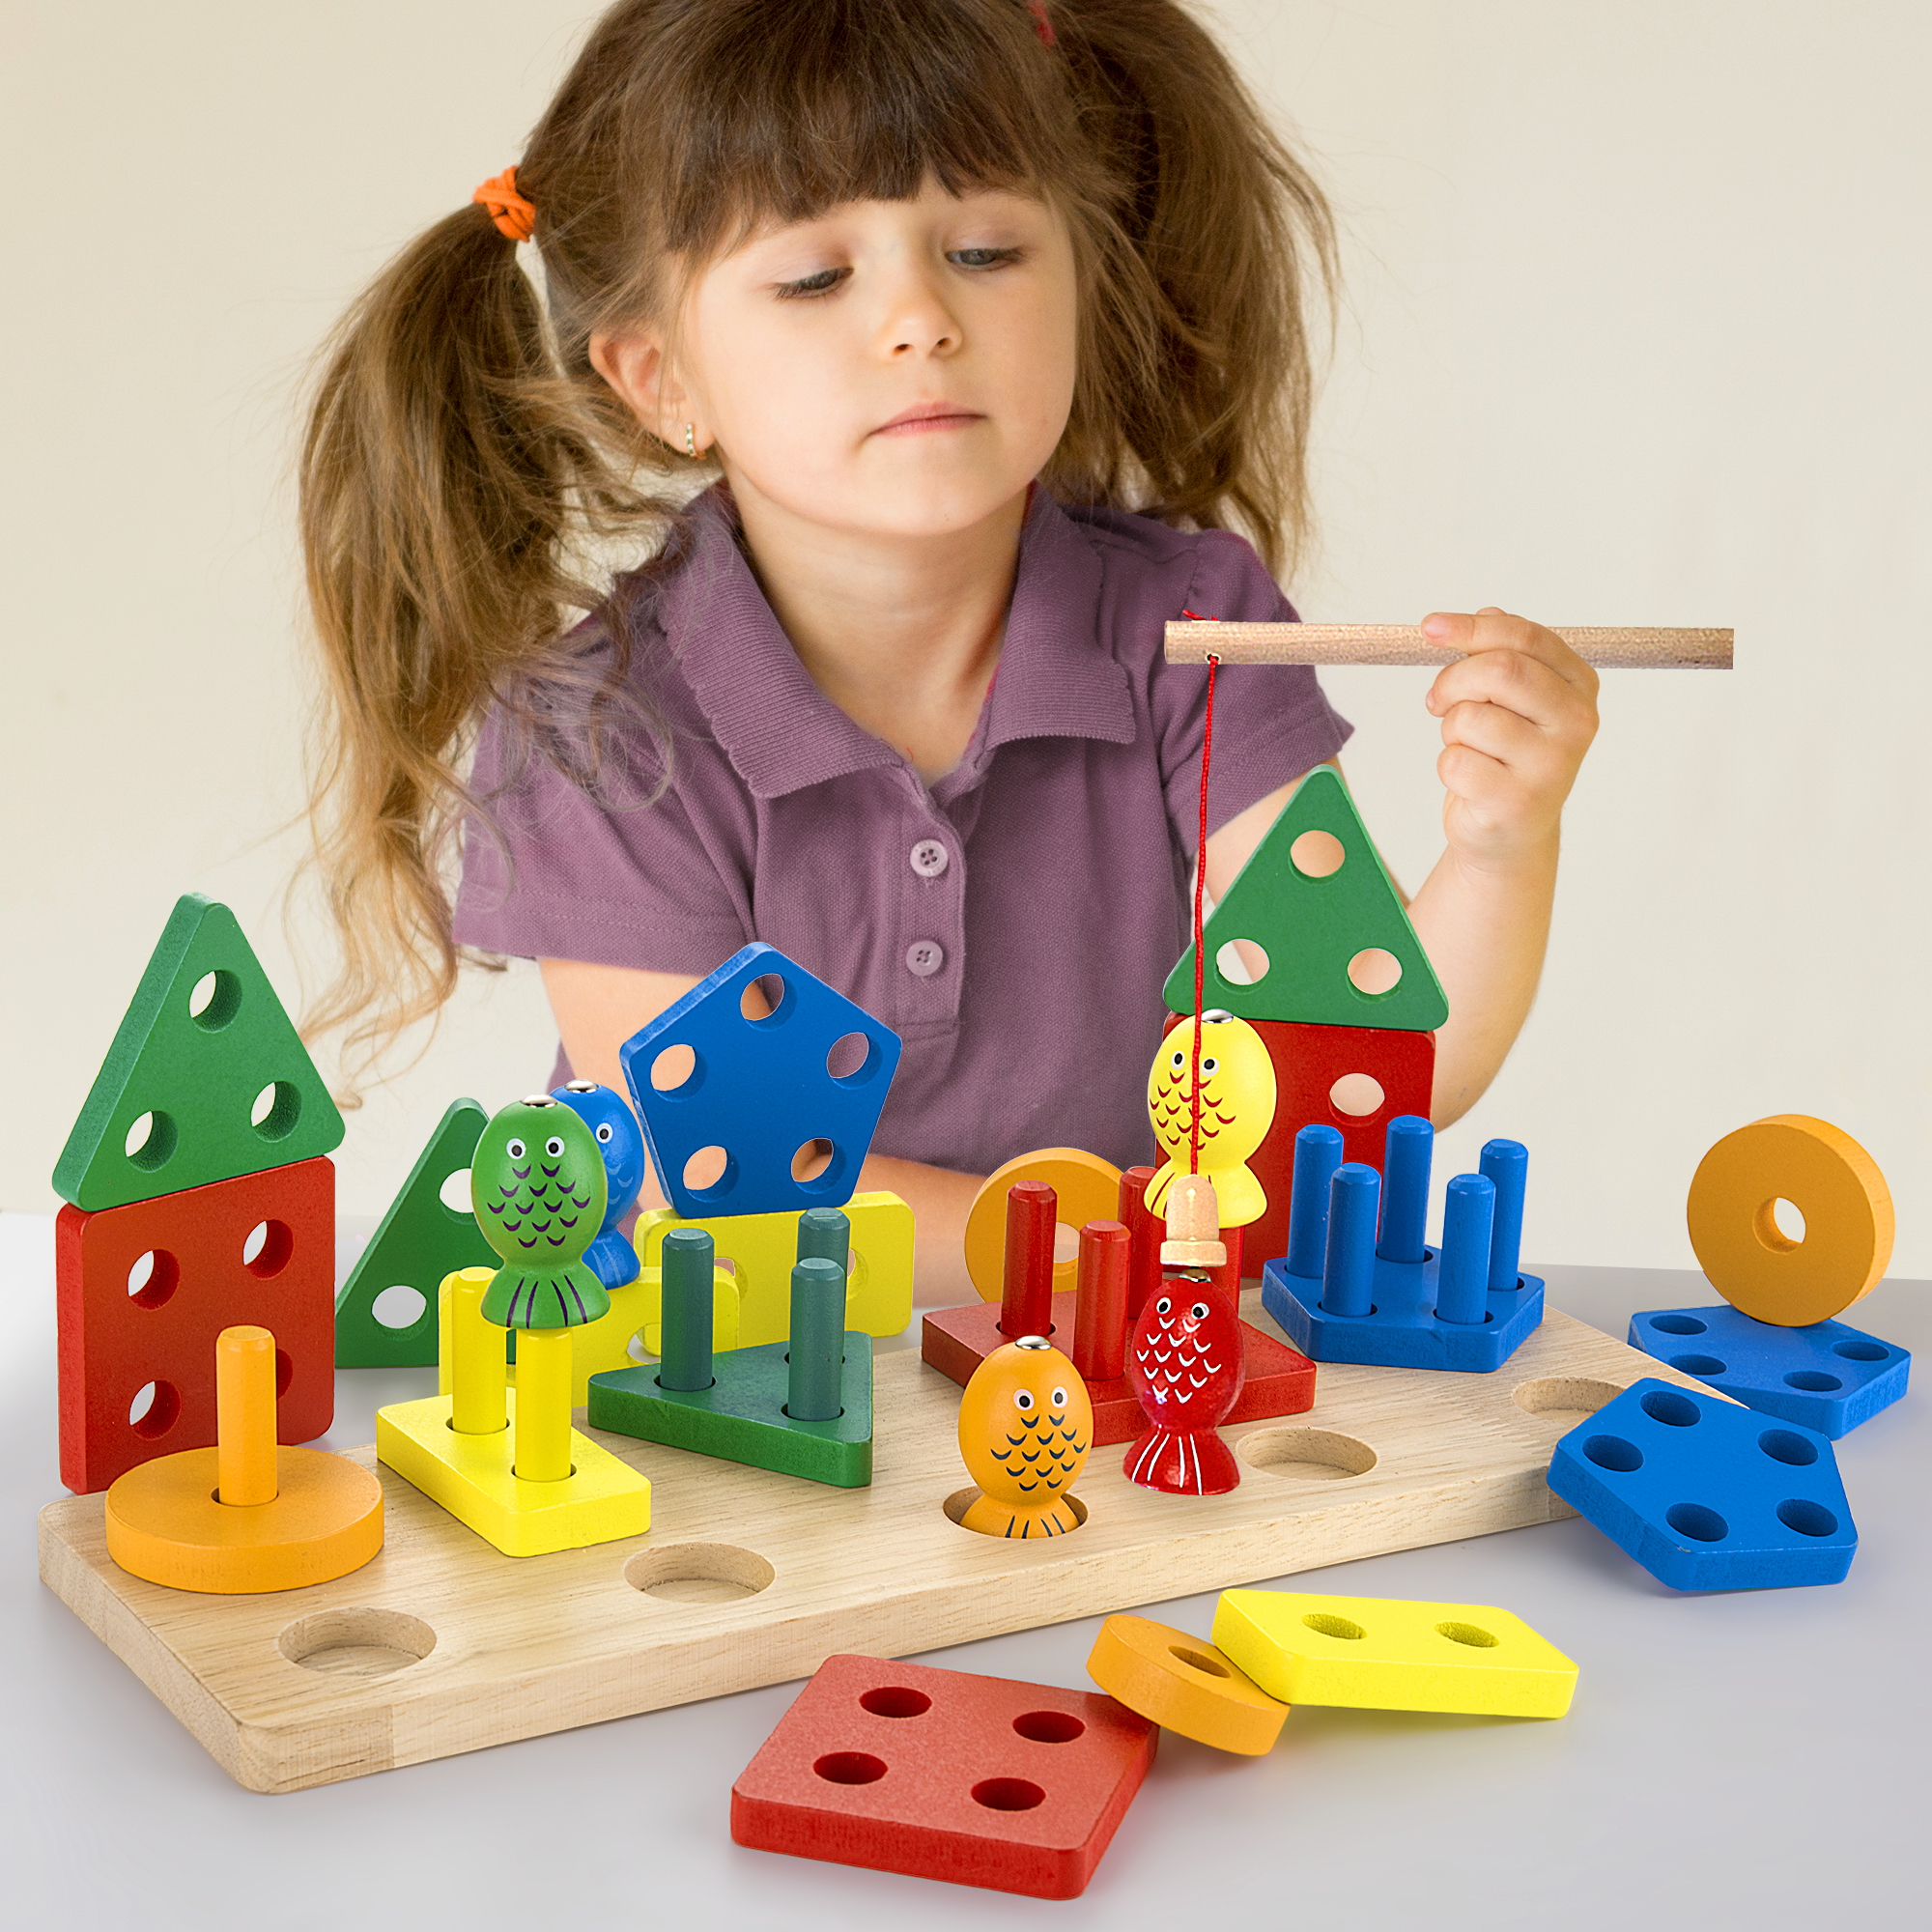 Wooden Block Board Shape Sorter Educational Baby Toy Preschool Match